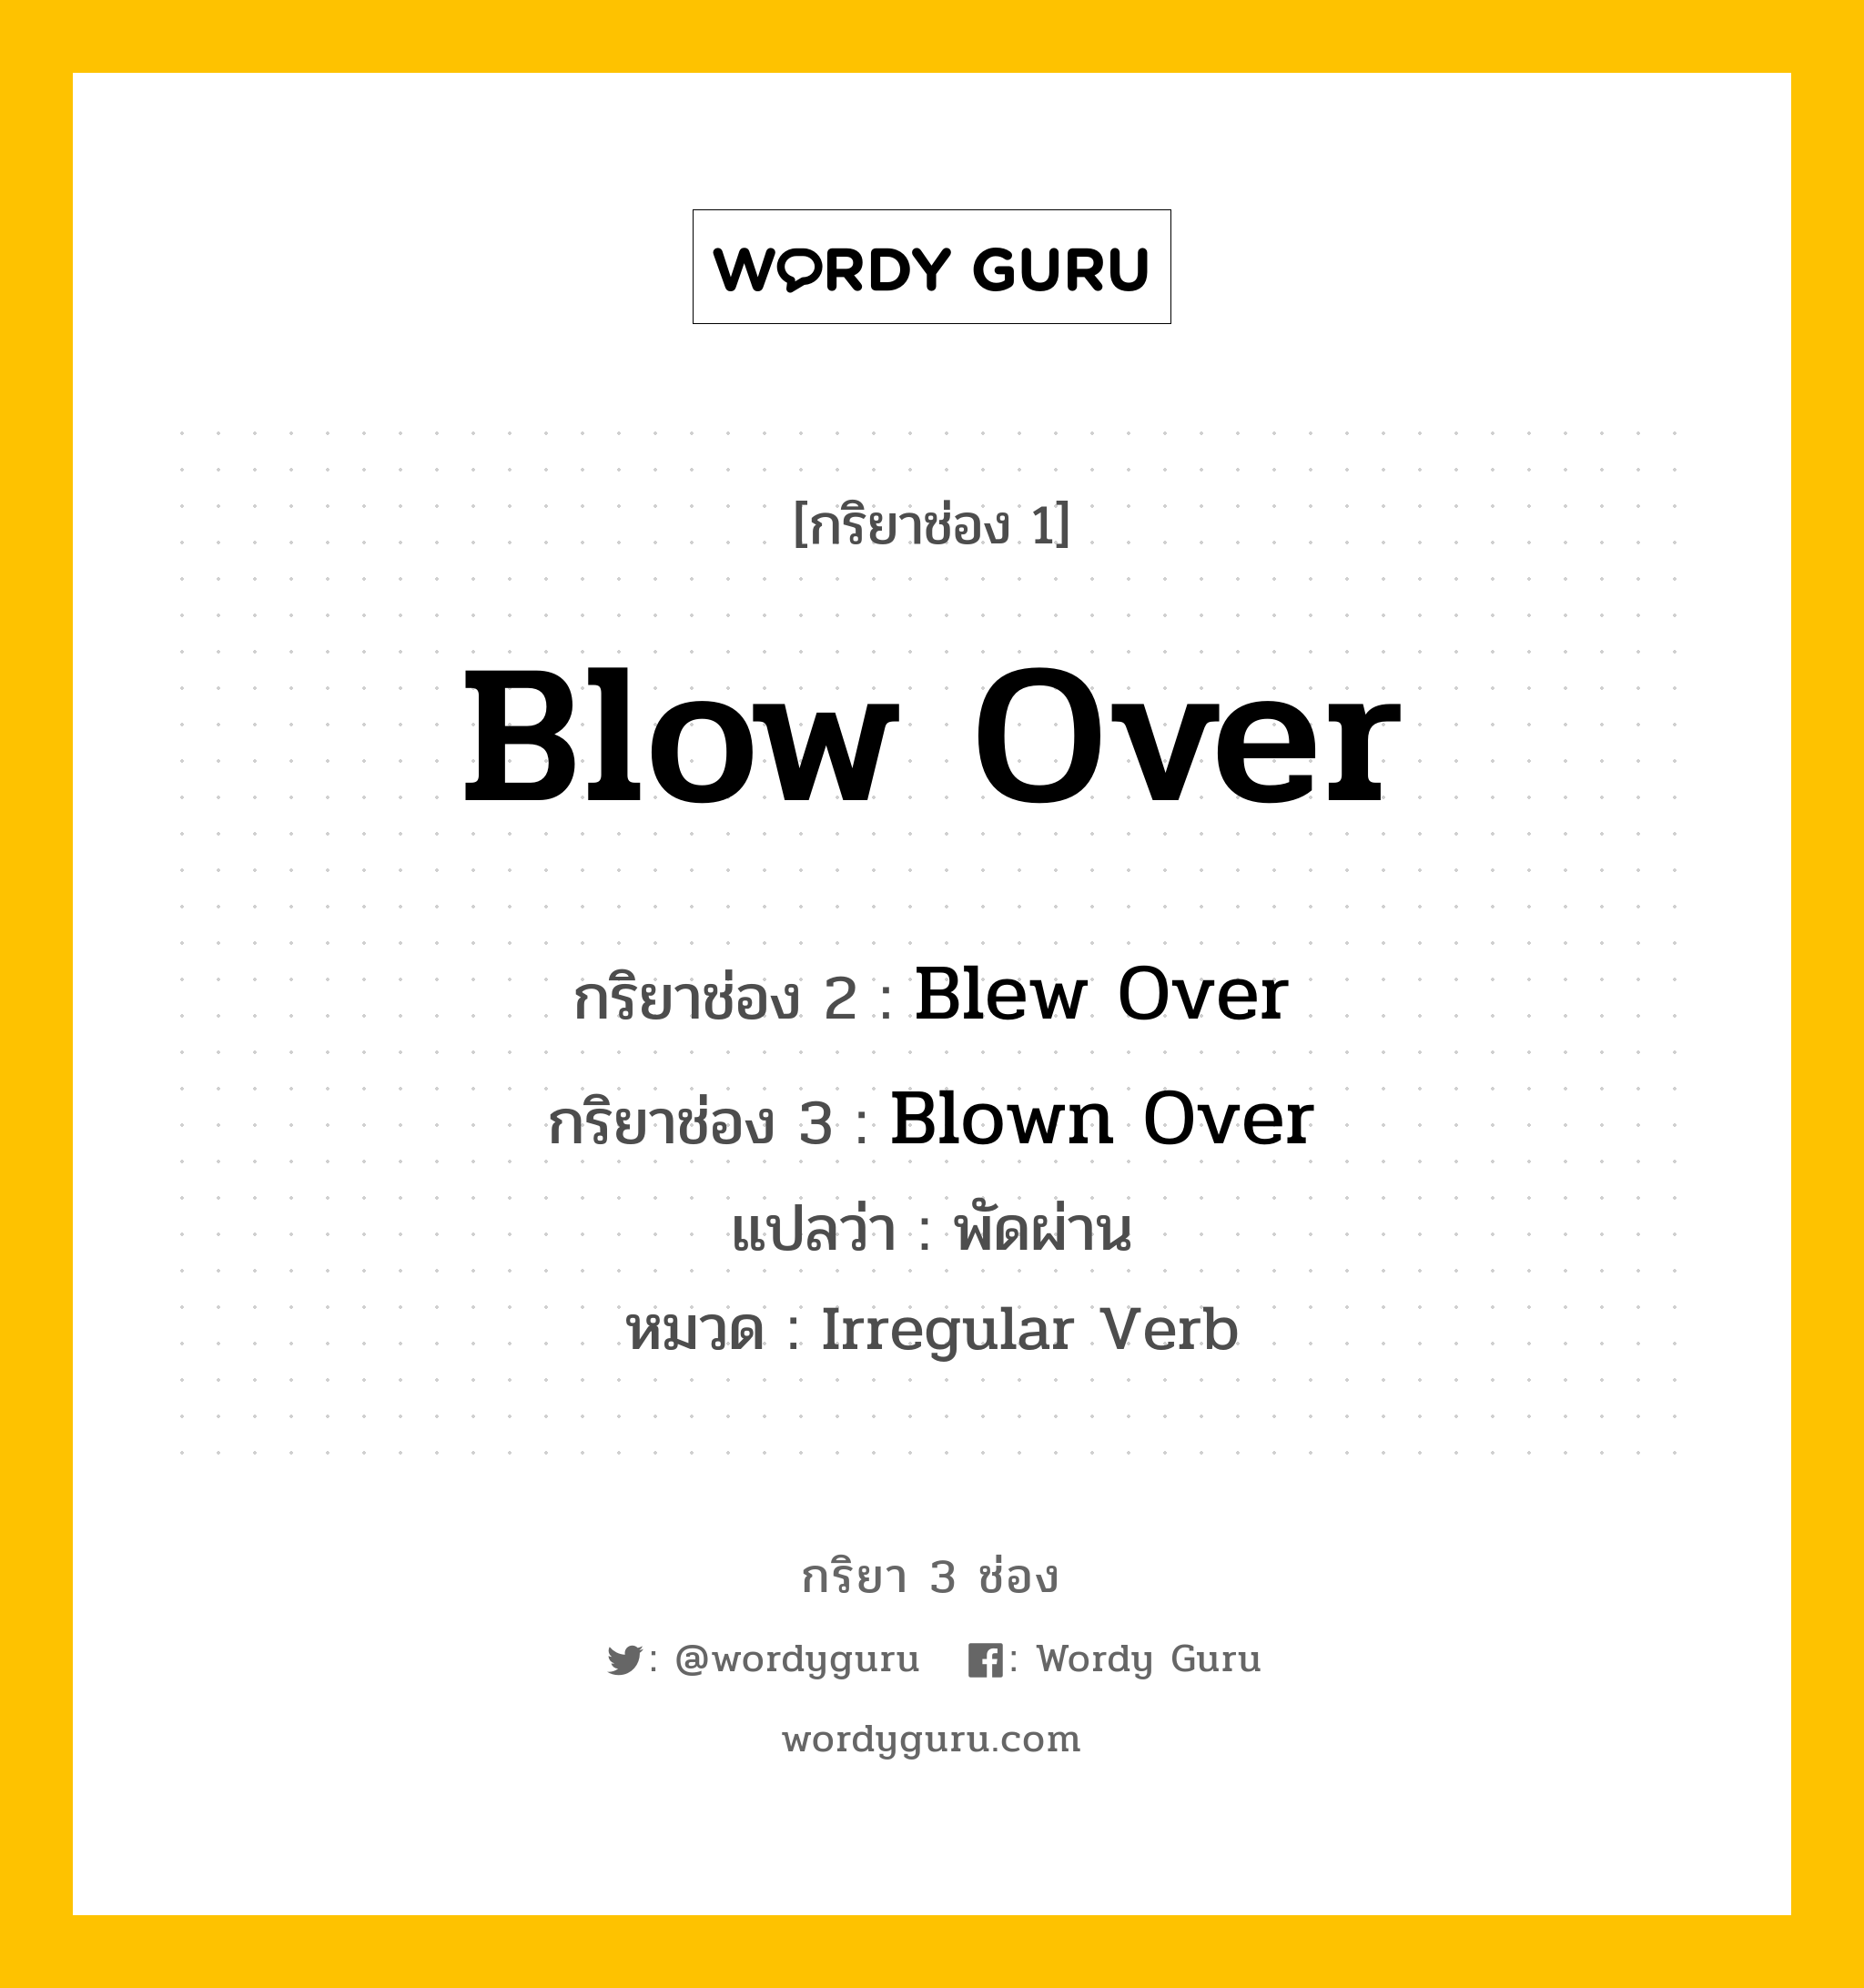 กริยา 3 ช่อง ของ Blow Over คืออะไร? มาดูคำอ่าน คำแปลกันเลย, กริยาช่อง 1 Blow Over กริยาช่อง 2 Blew Over กริยาช่อง 3 Blown Over แปลว่า พัดผ่าน หมวด Irregular Verb หมวด Irregular Verb